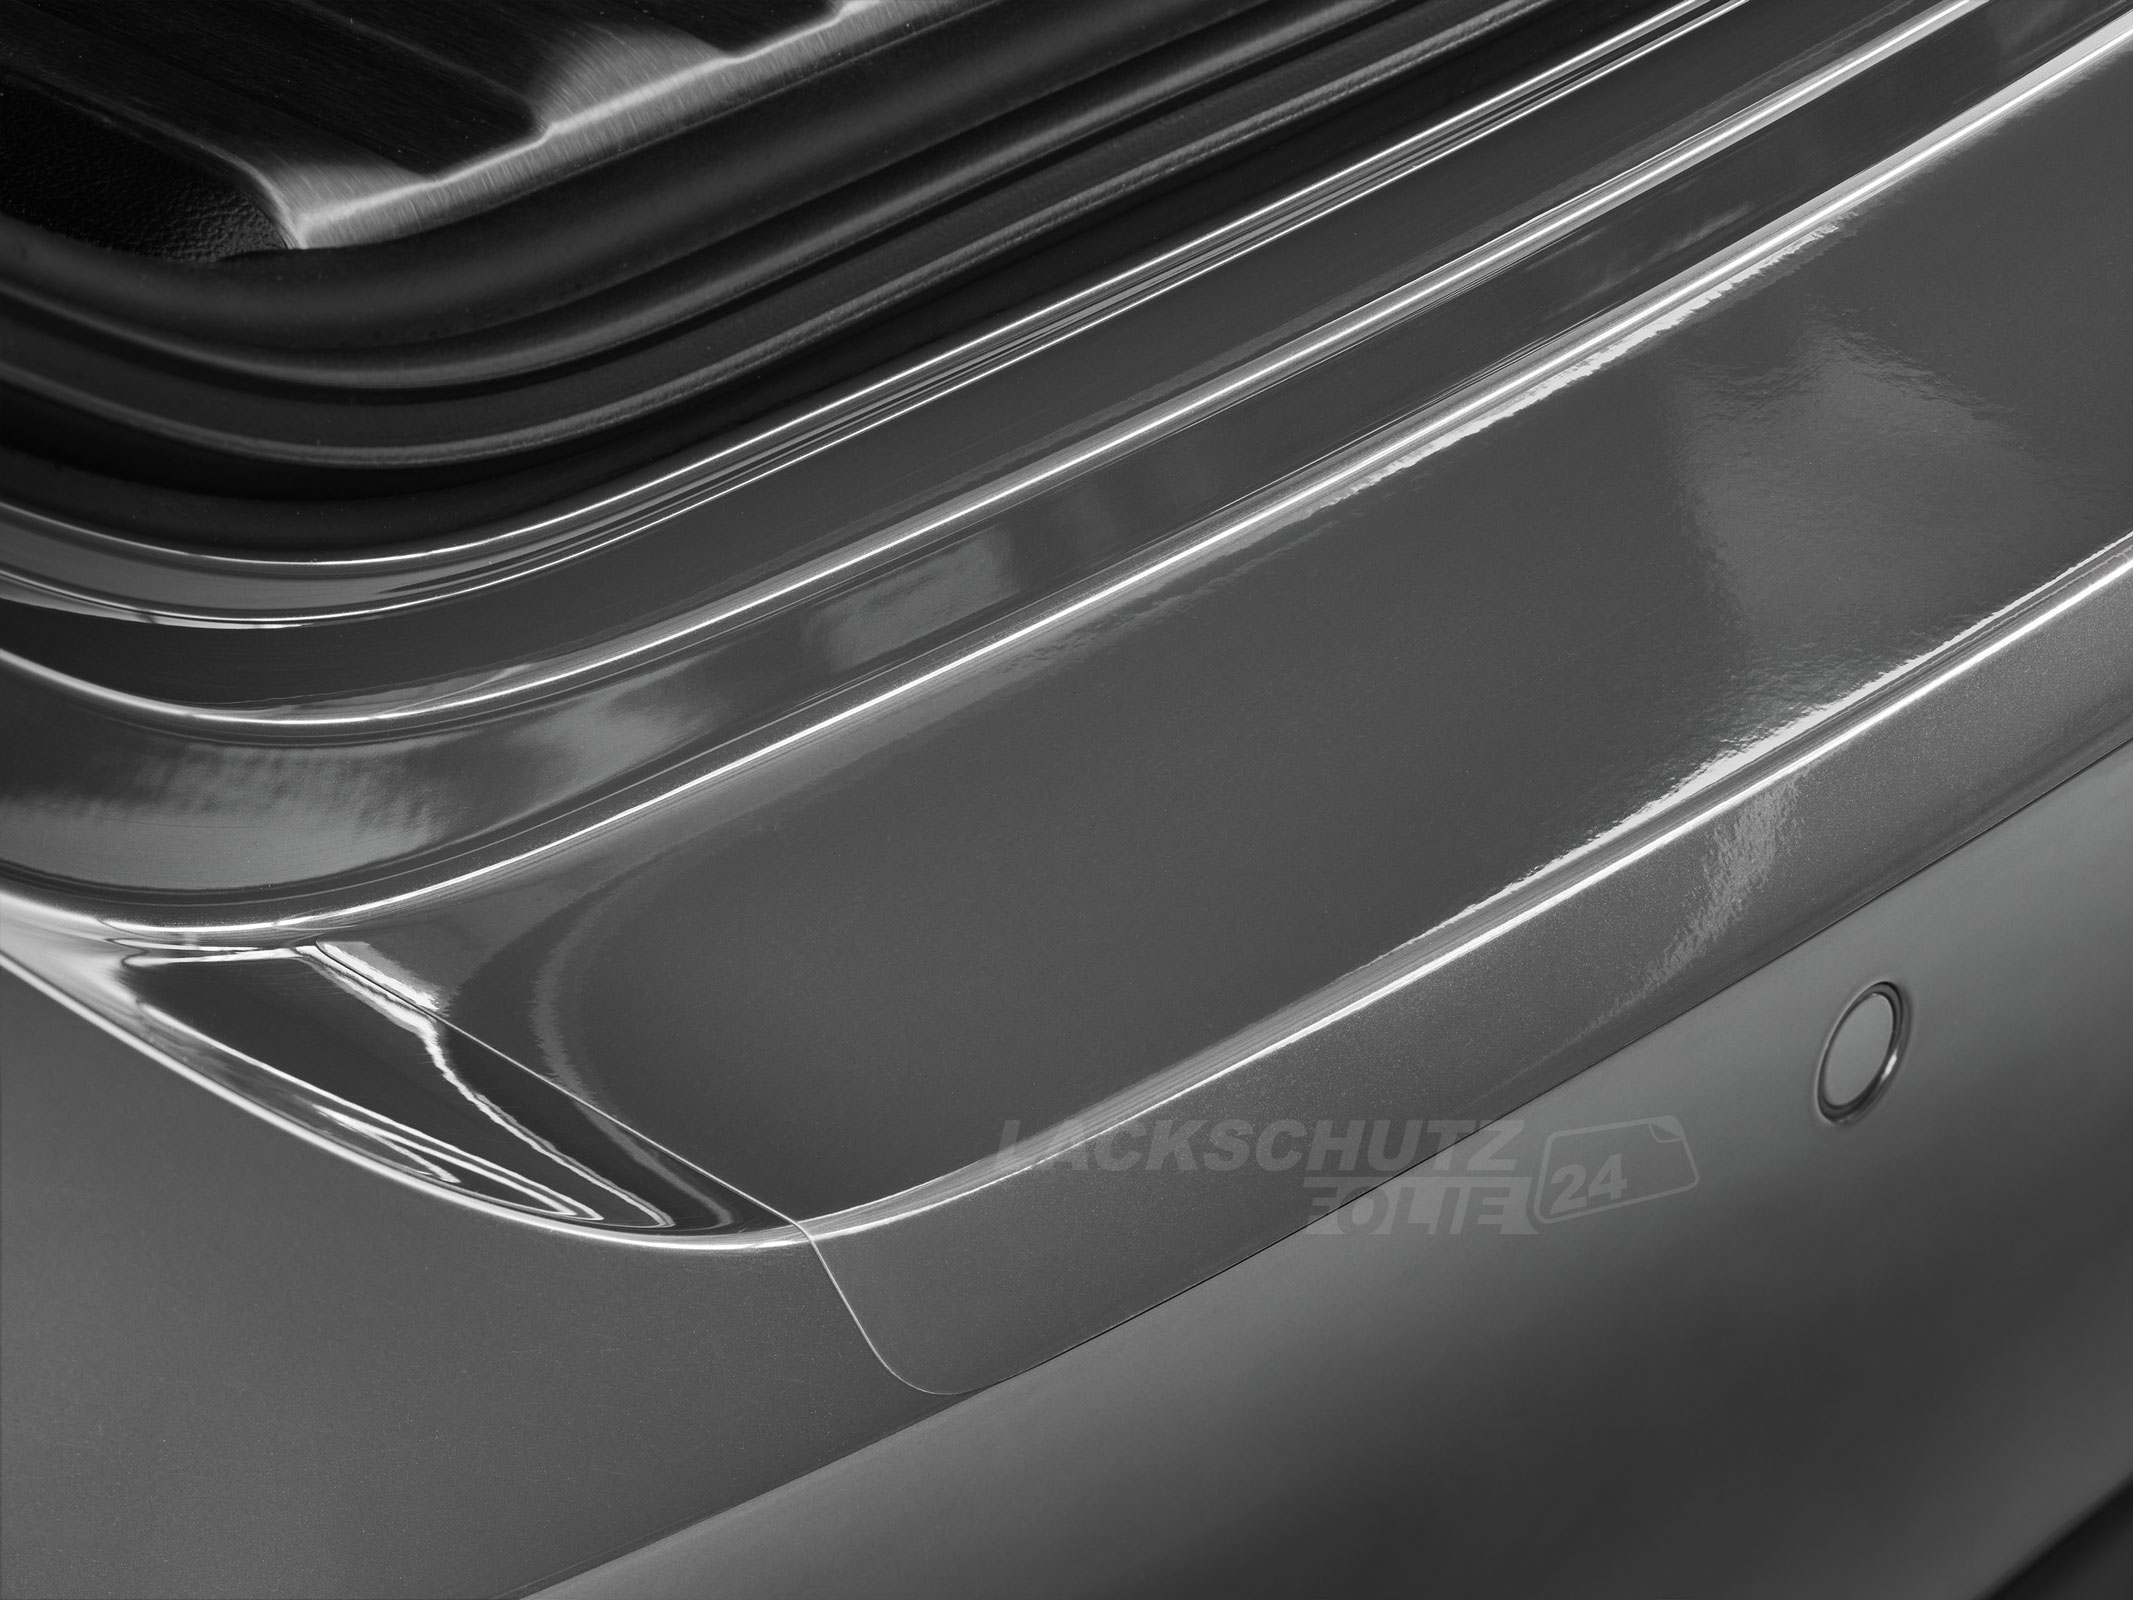 Ladekantenschutzfolie - Transparent Glatt Hochglänzend für Mercedes-Benz A-Klasse Typ W169, BJ 2004-10/2012